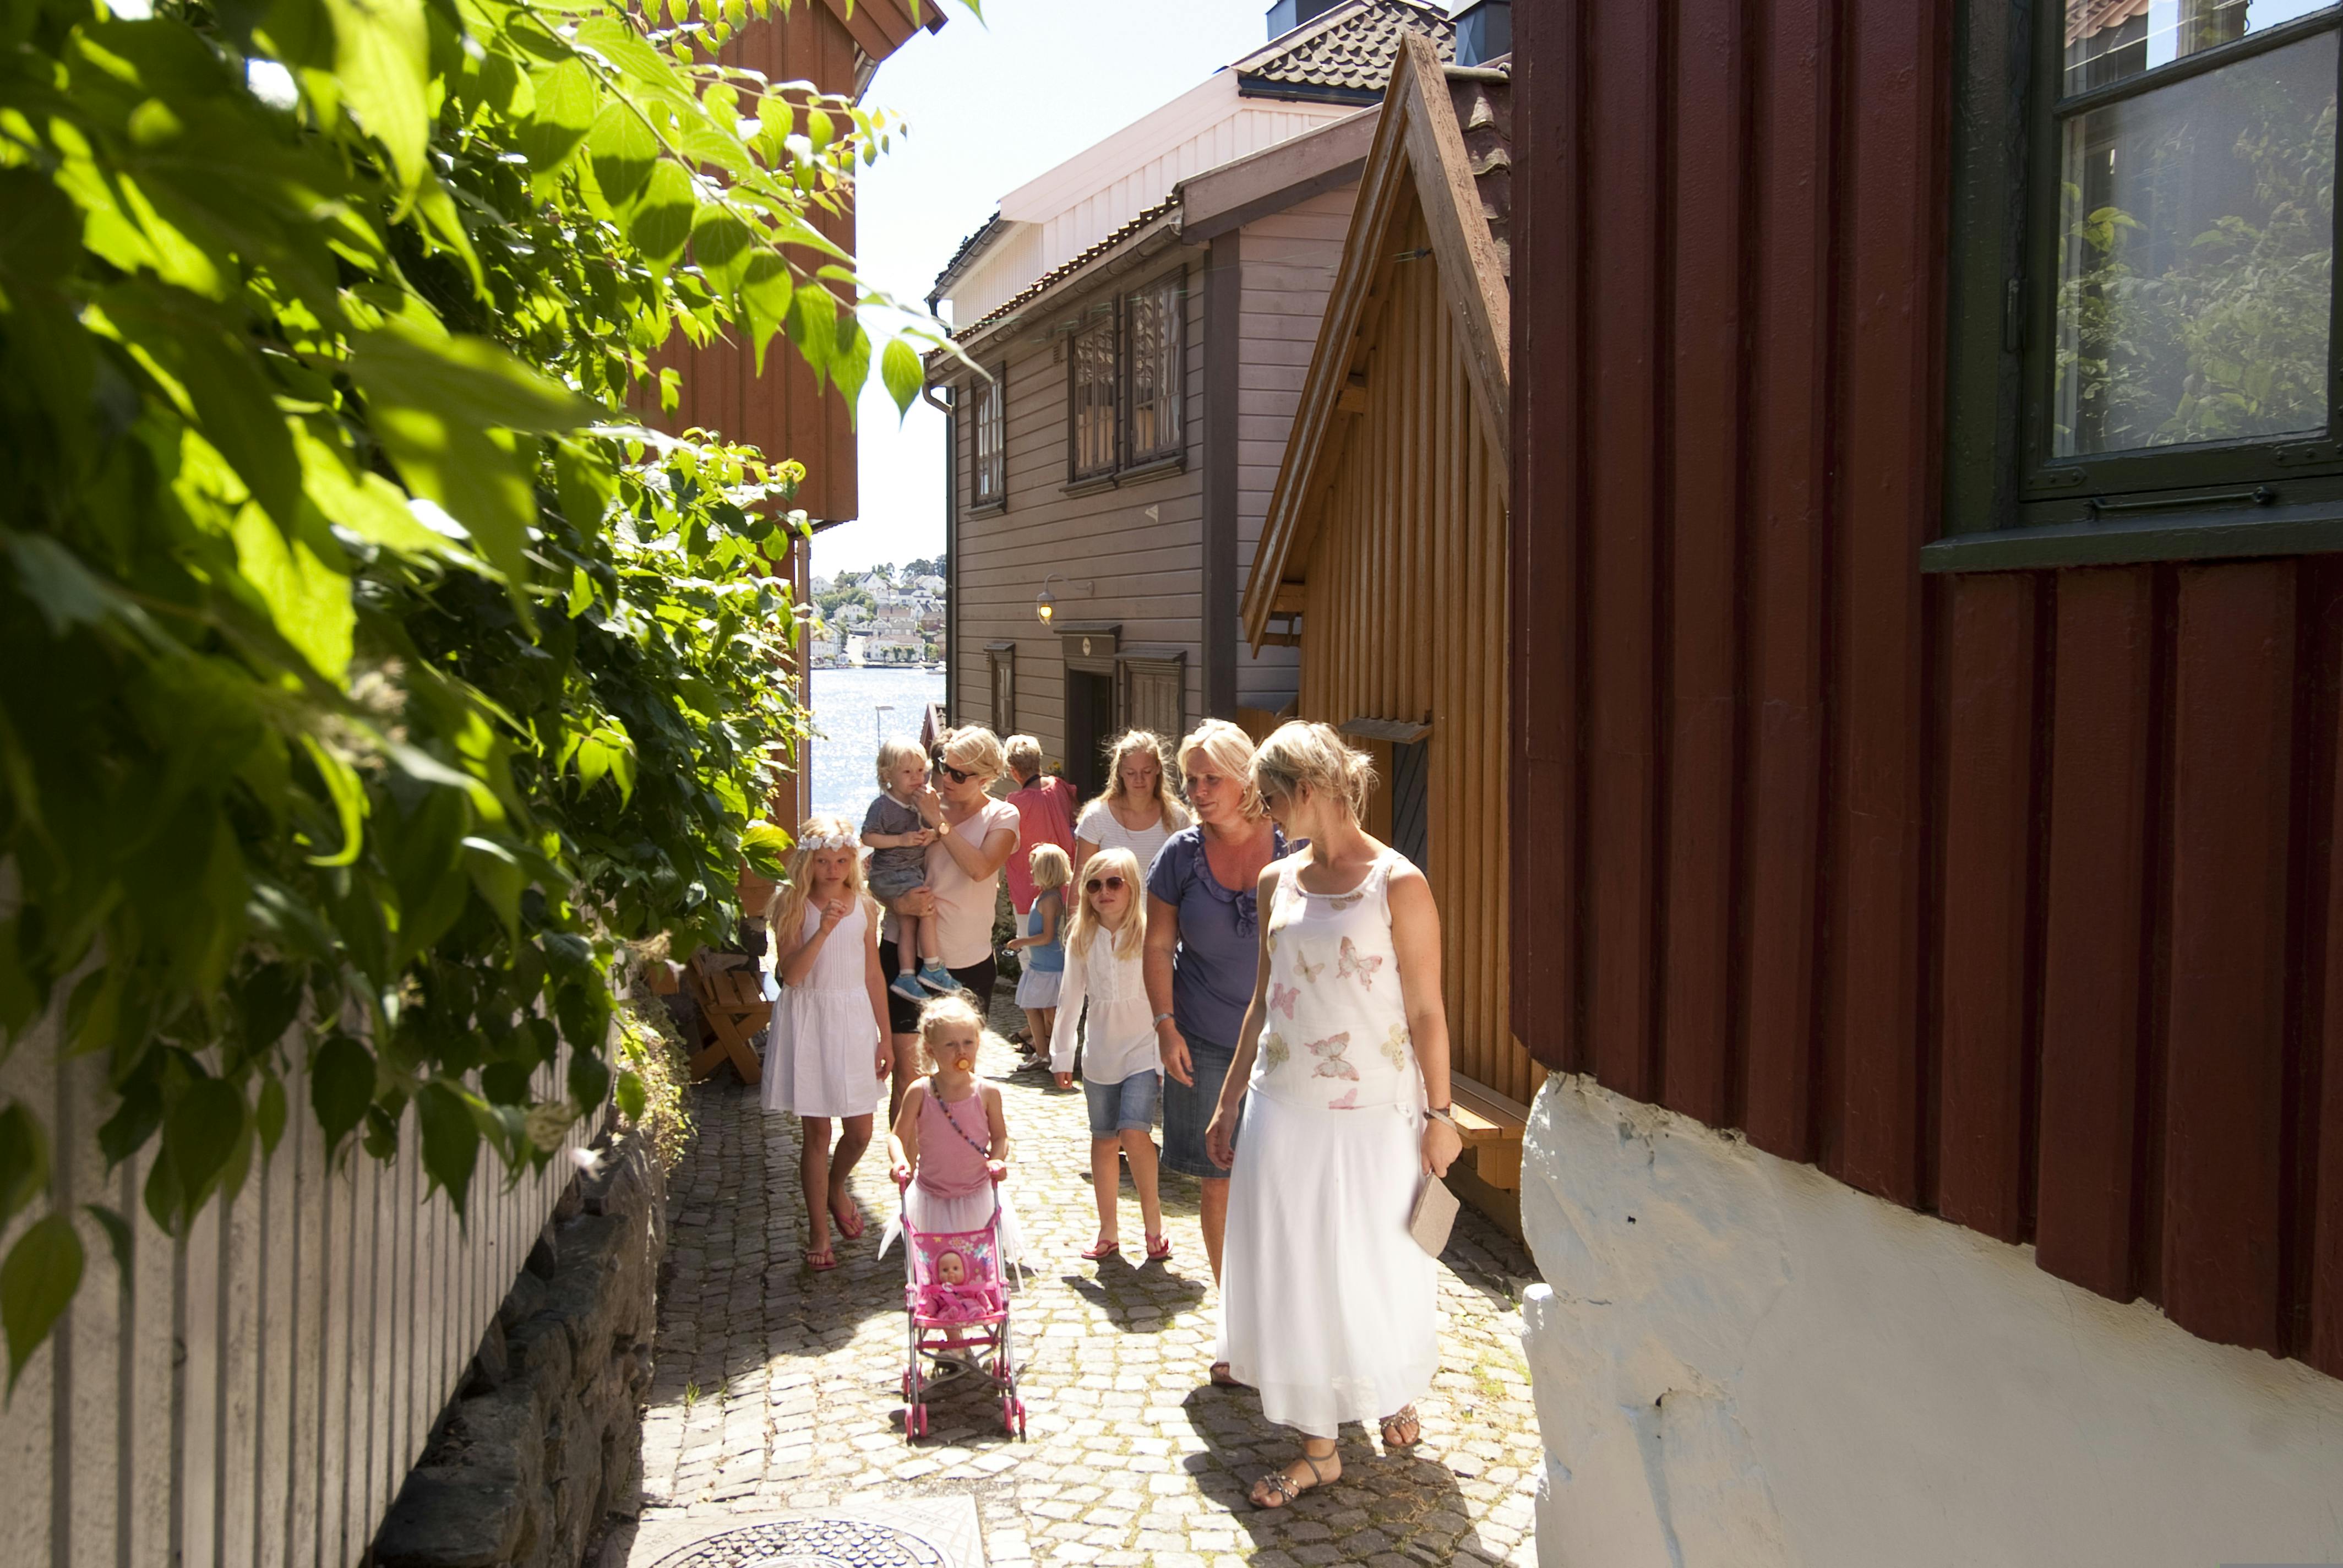 Inspirasjon av Tyholmen - Arendals gamle bydel